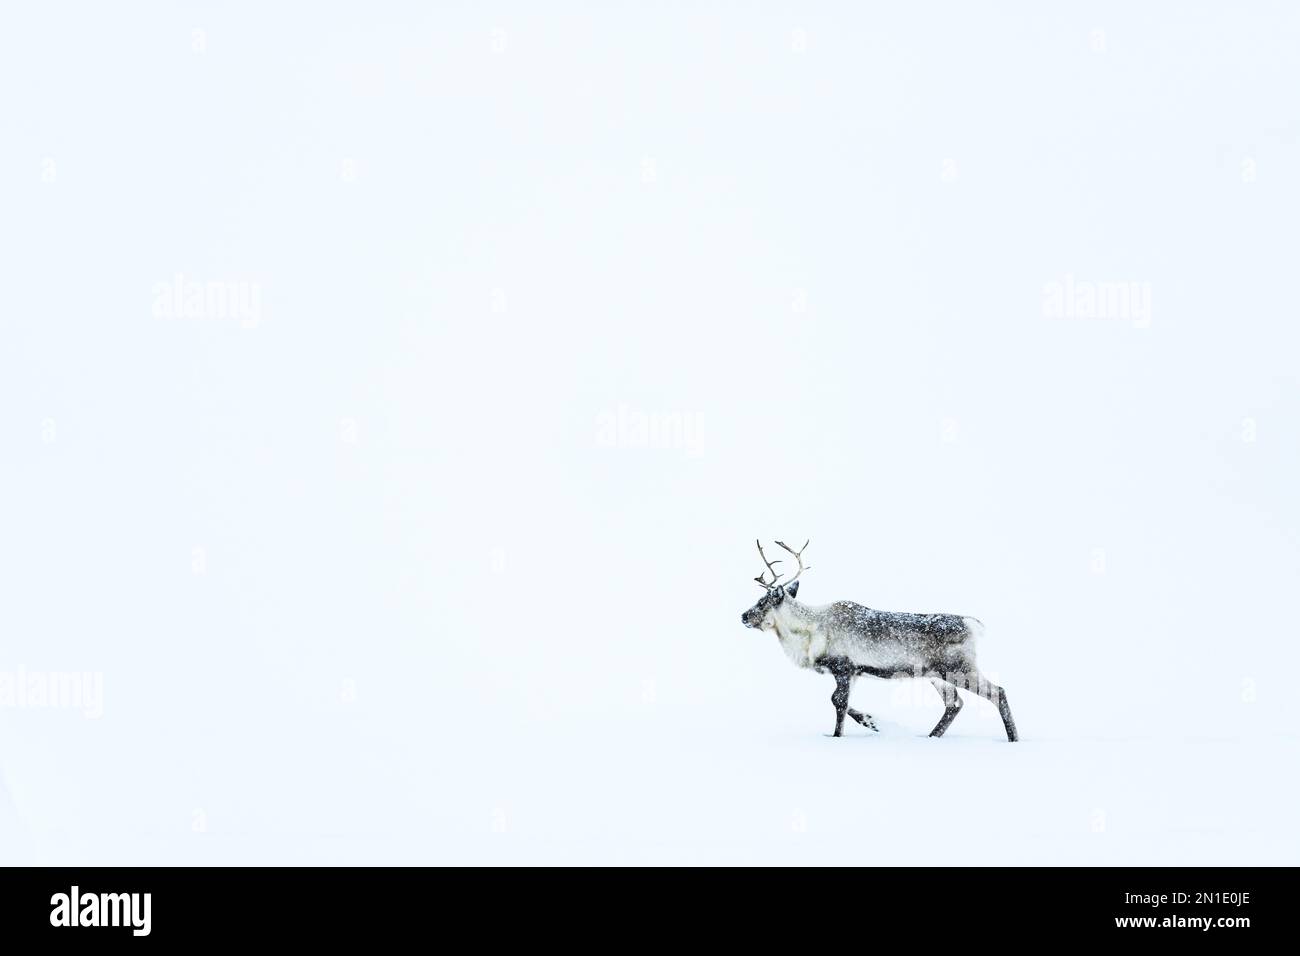 Un renne se promenant dans la neige pendant un blizzard, Stora Sjofallet, Comté de Norrbotten, Laponie, Suède, Scandinavie, Europe Banque D'Images